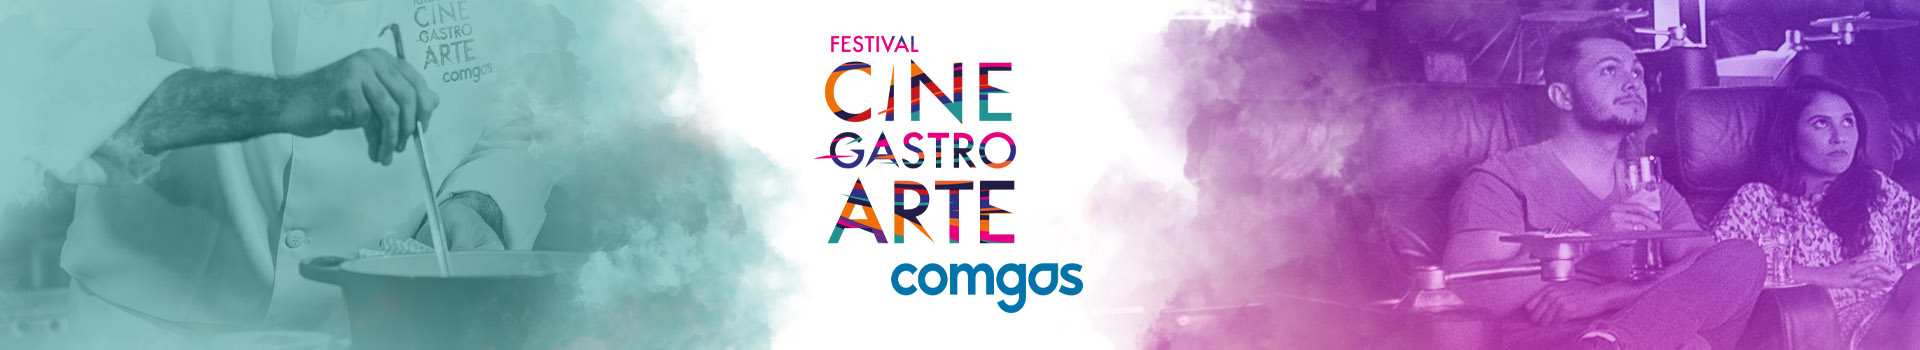 Festival Cinegastroarte